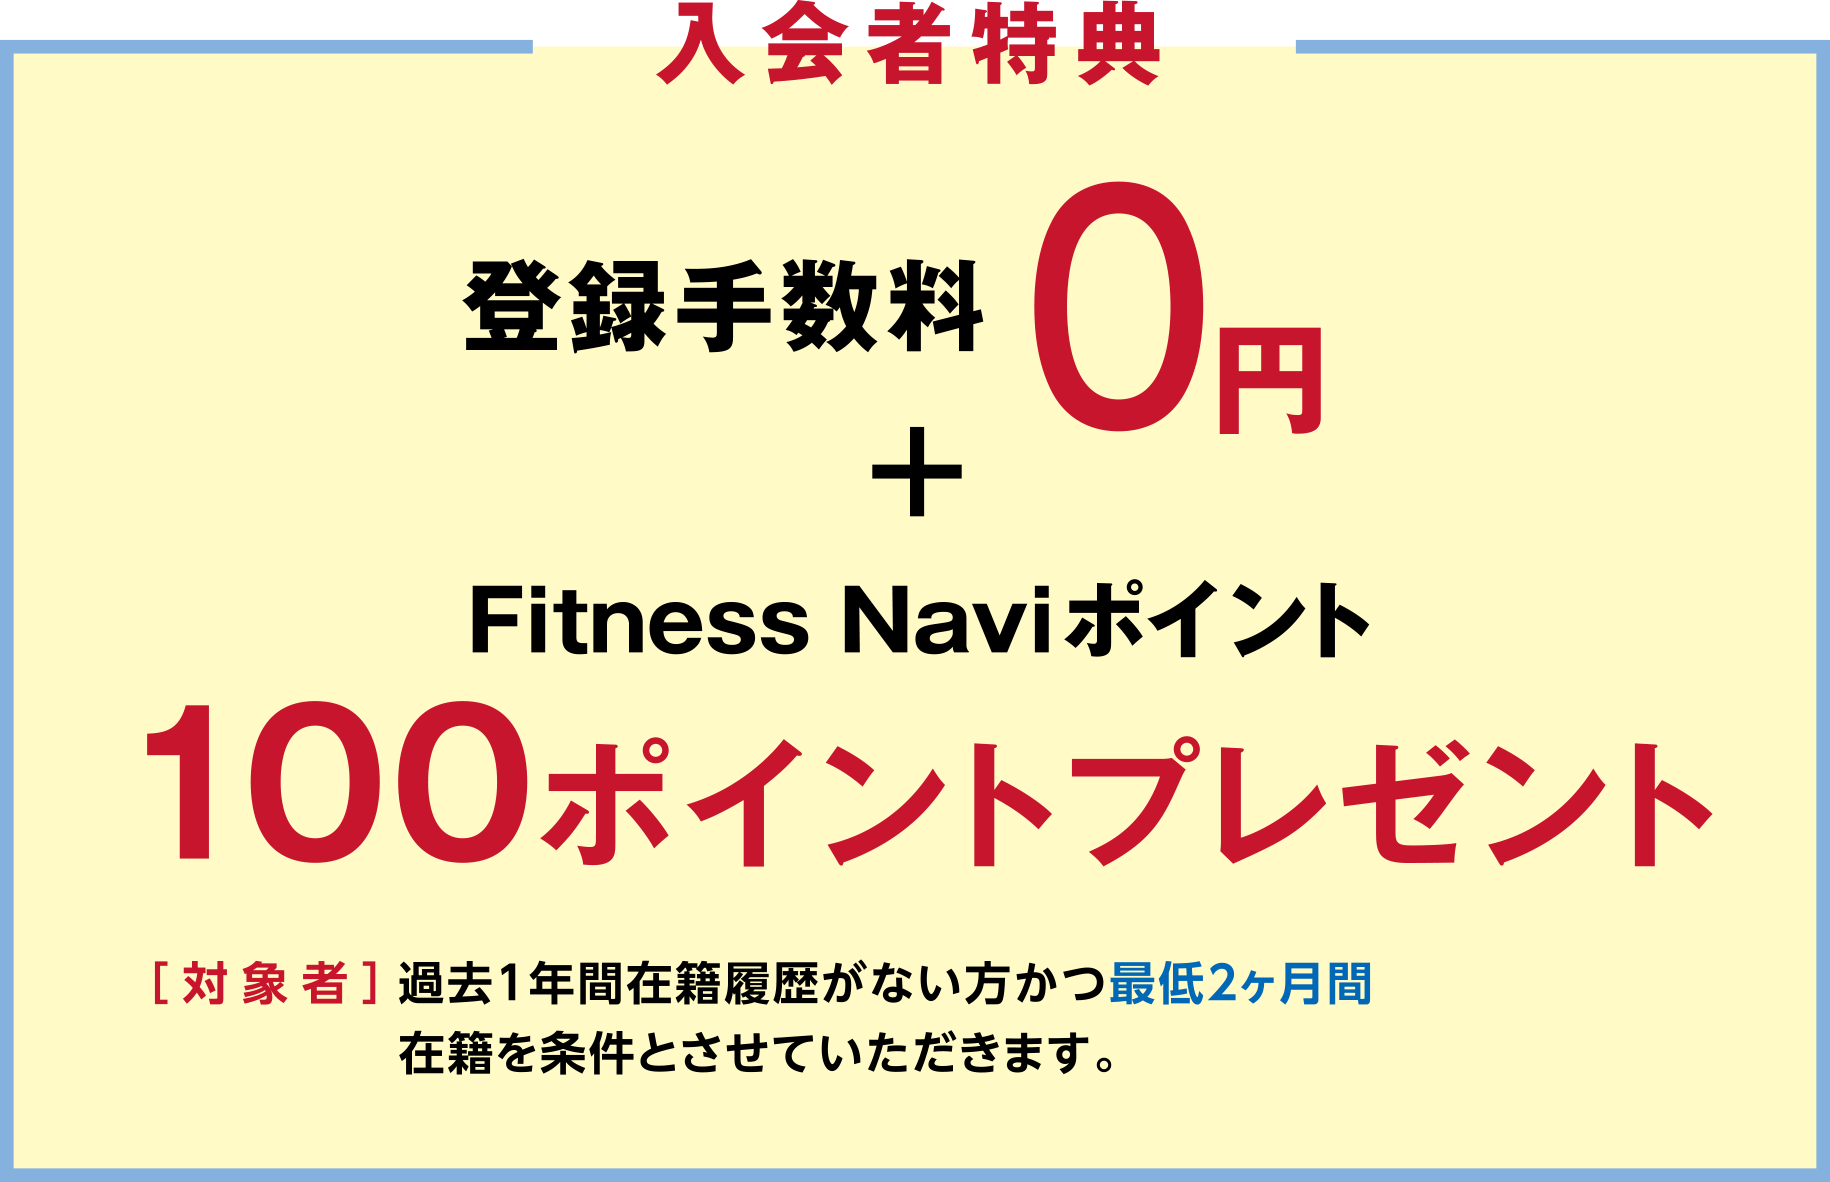 「入会者特典」登録手数料0円+Fitness Naviポイント100ポイントプレゼント ［対象者］過去1年間在籍履歴がない方かつ最低2ヶ月間在籍を条件とさせていただきます。